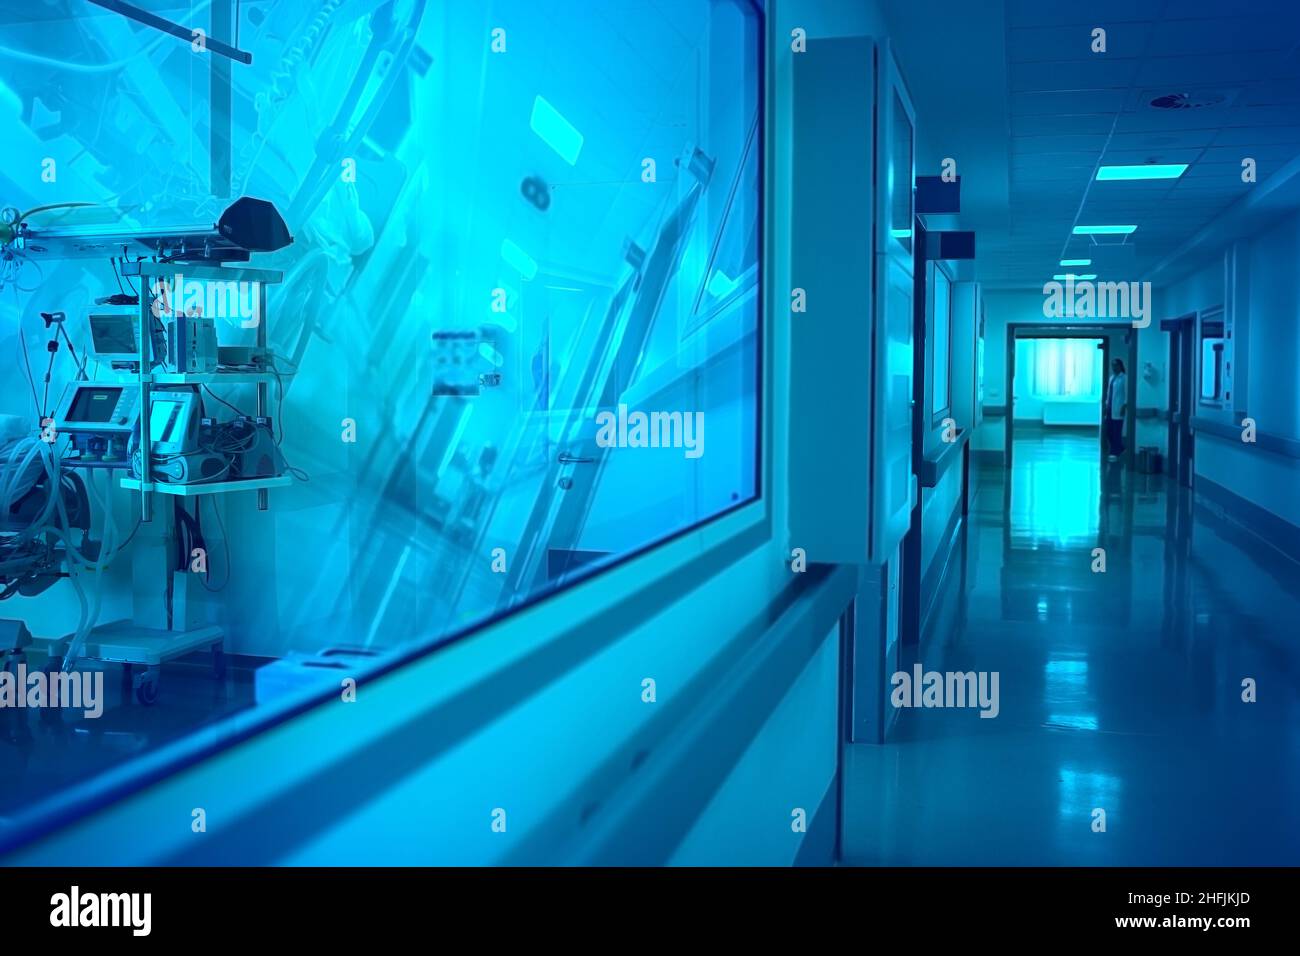 Corridoio dell'ospedale con finestra di osservazione al reparto con apparecchiatura riflettente e silhouette di medico femminile in fondo al corridoio. Foto Stock